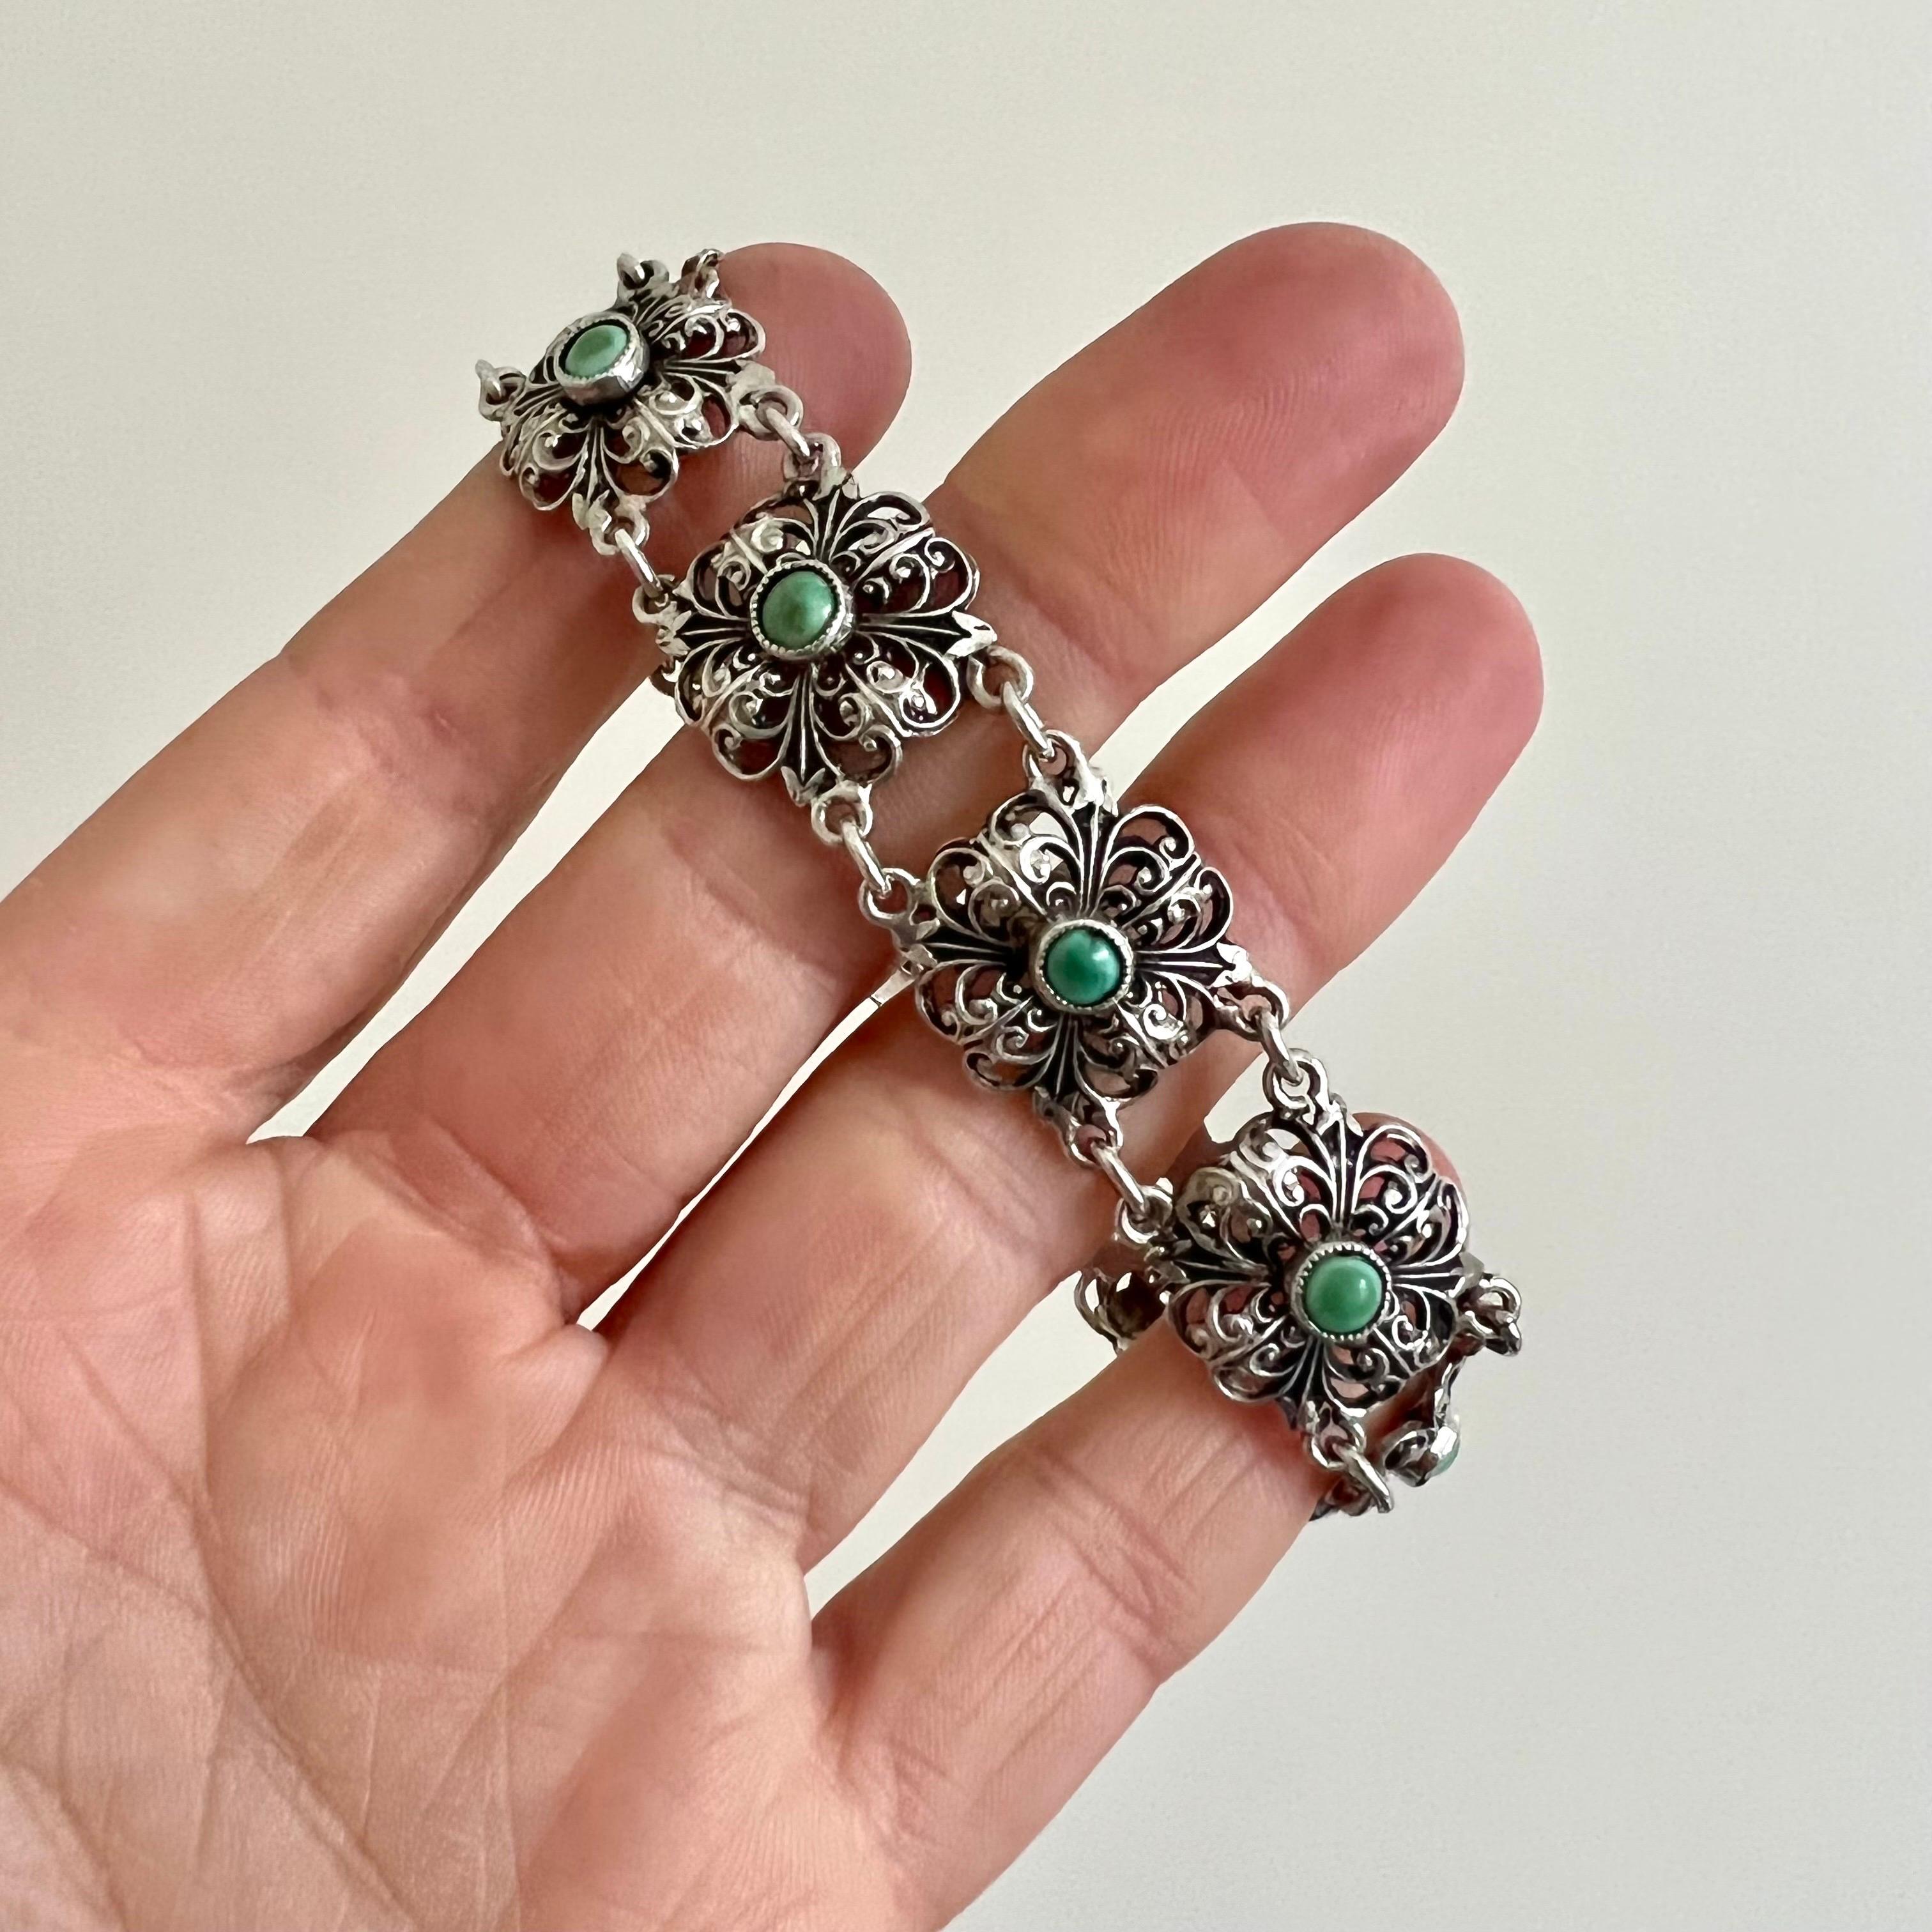 Magnifique bracelet ajouré en argent du début du 20e siècle, serti de neuf turquoises vertes. Le bracelet est composé de neuf délicats compartiments floraux en argent, chaque maillon étant serti d'une pierre turquoise verte ronde au centre. Ces